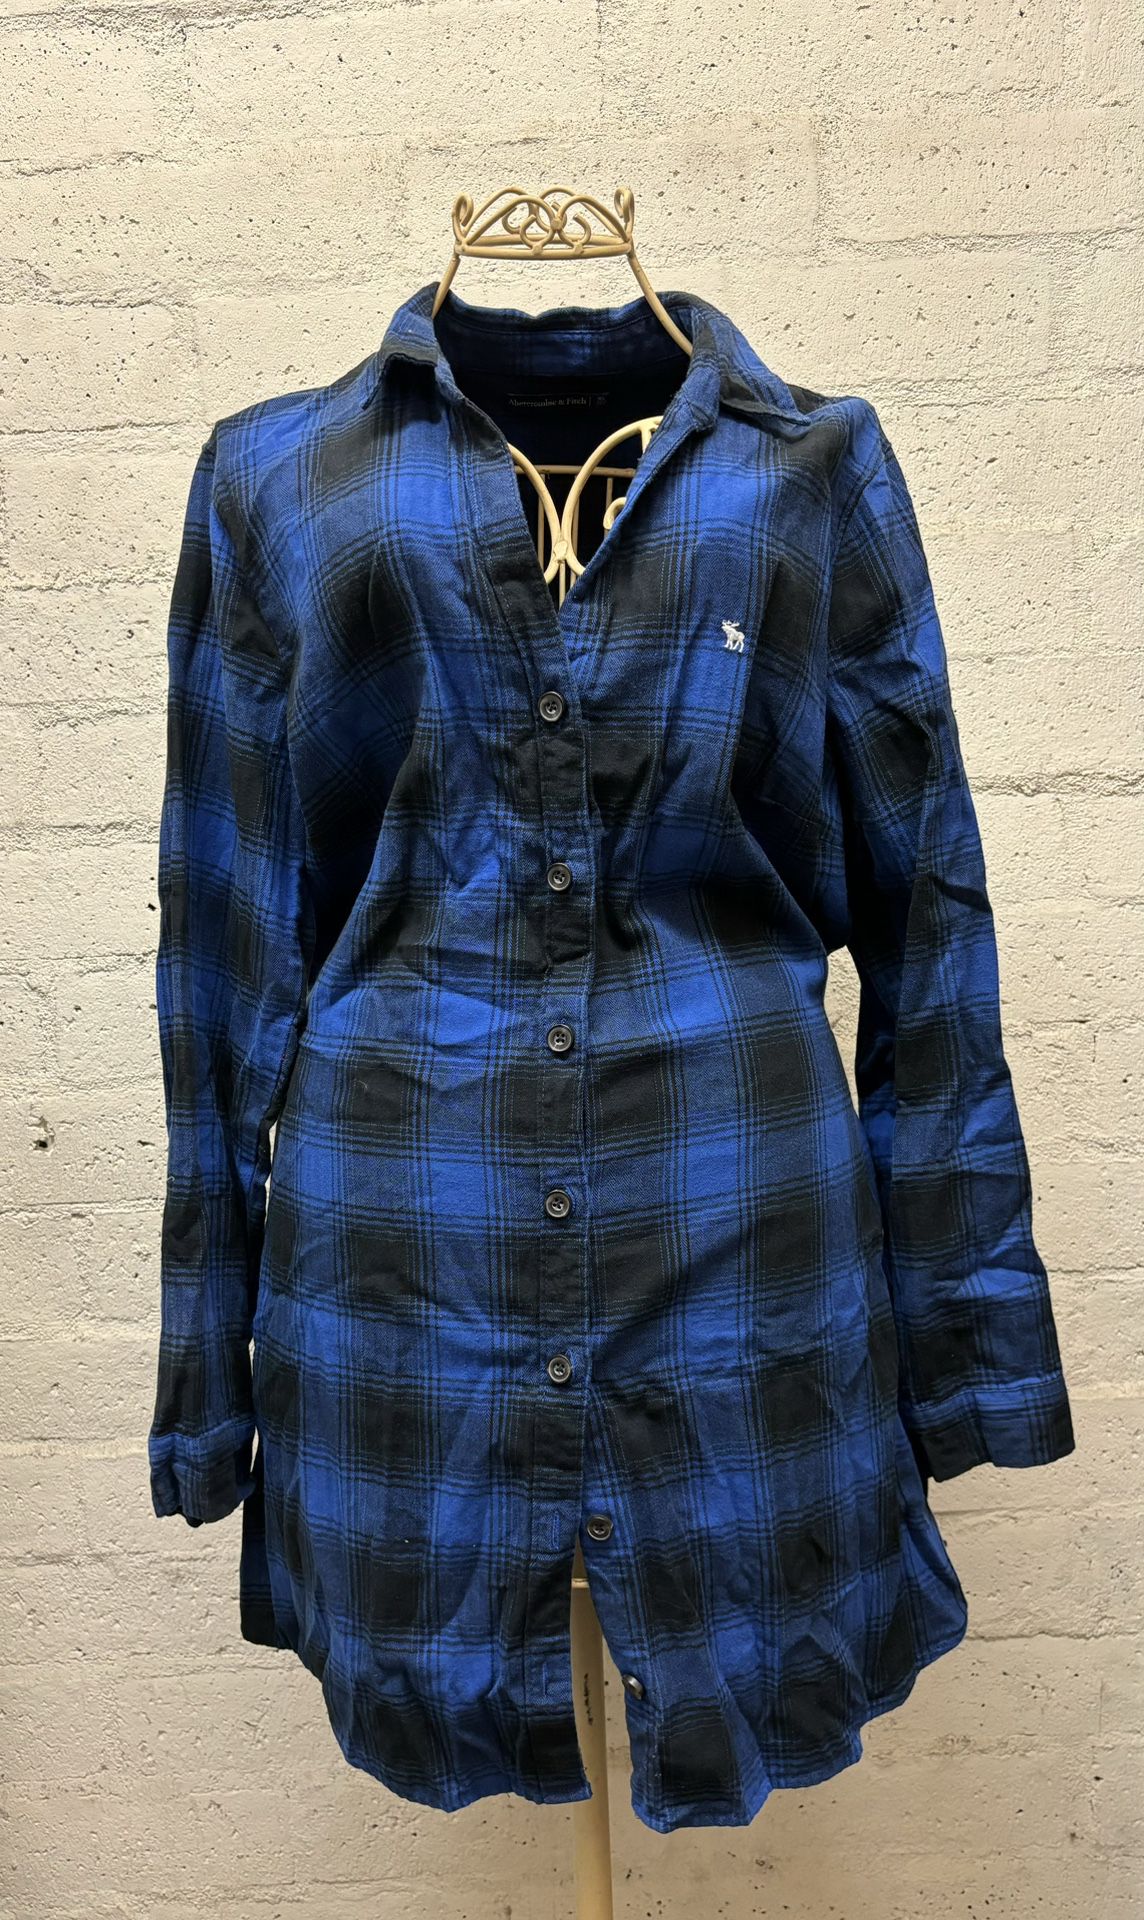 Blue Plaid Women’s Dress Shirt